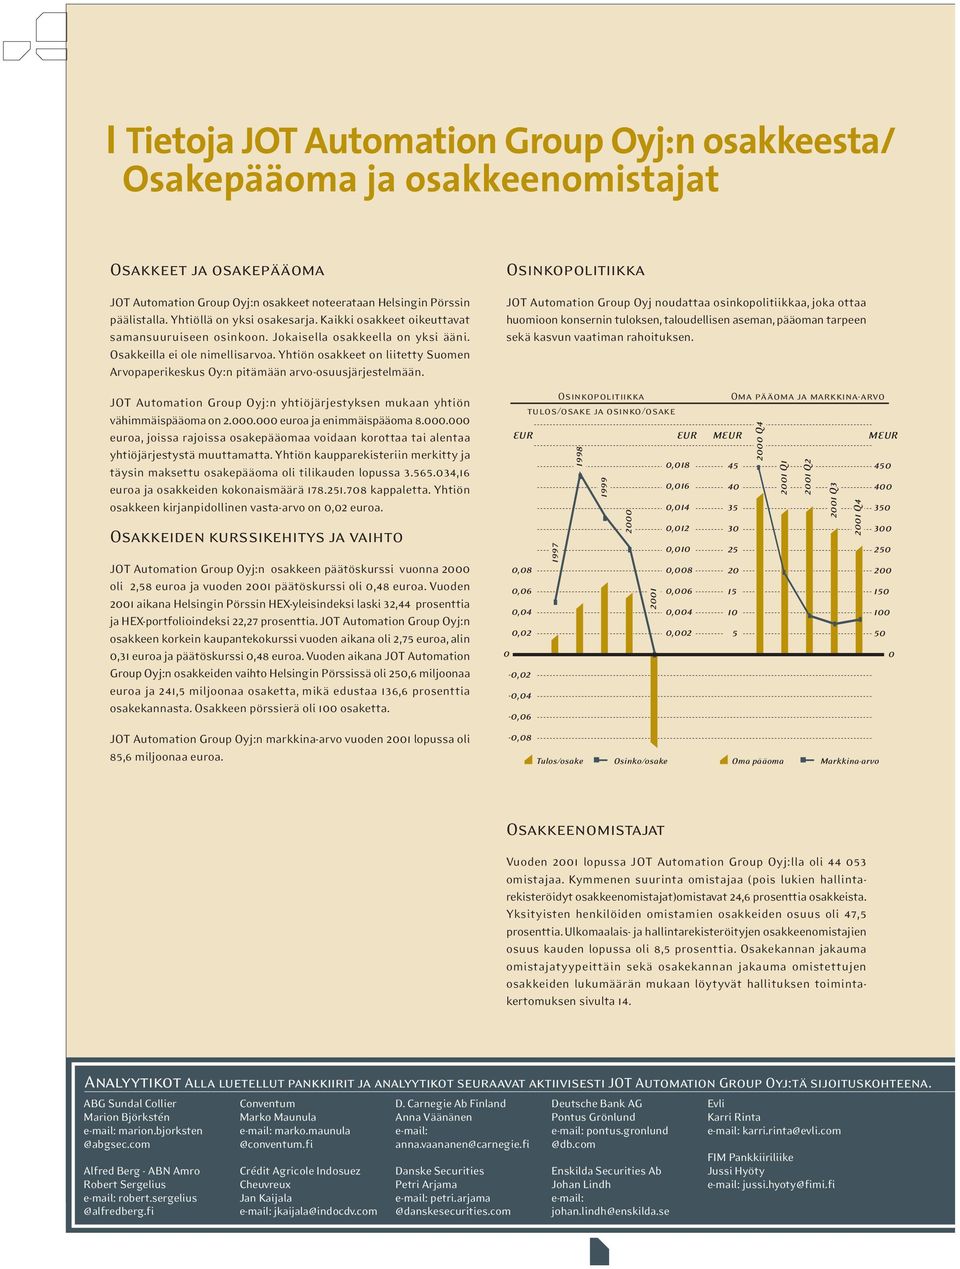 Yhtiön osakkeet on liitetty Suomen Arvopaperikeskus Oy:n pitämään arvo-osuusjärjestelmään. JOT Automation Group Oyj:n yhtiöjärjestyksen mukaan yhtiön vähimmäispääoma on 2.000.